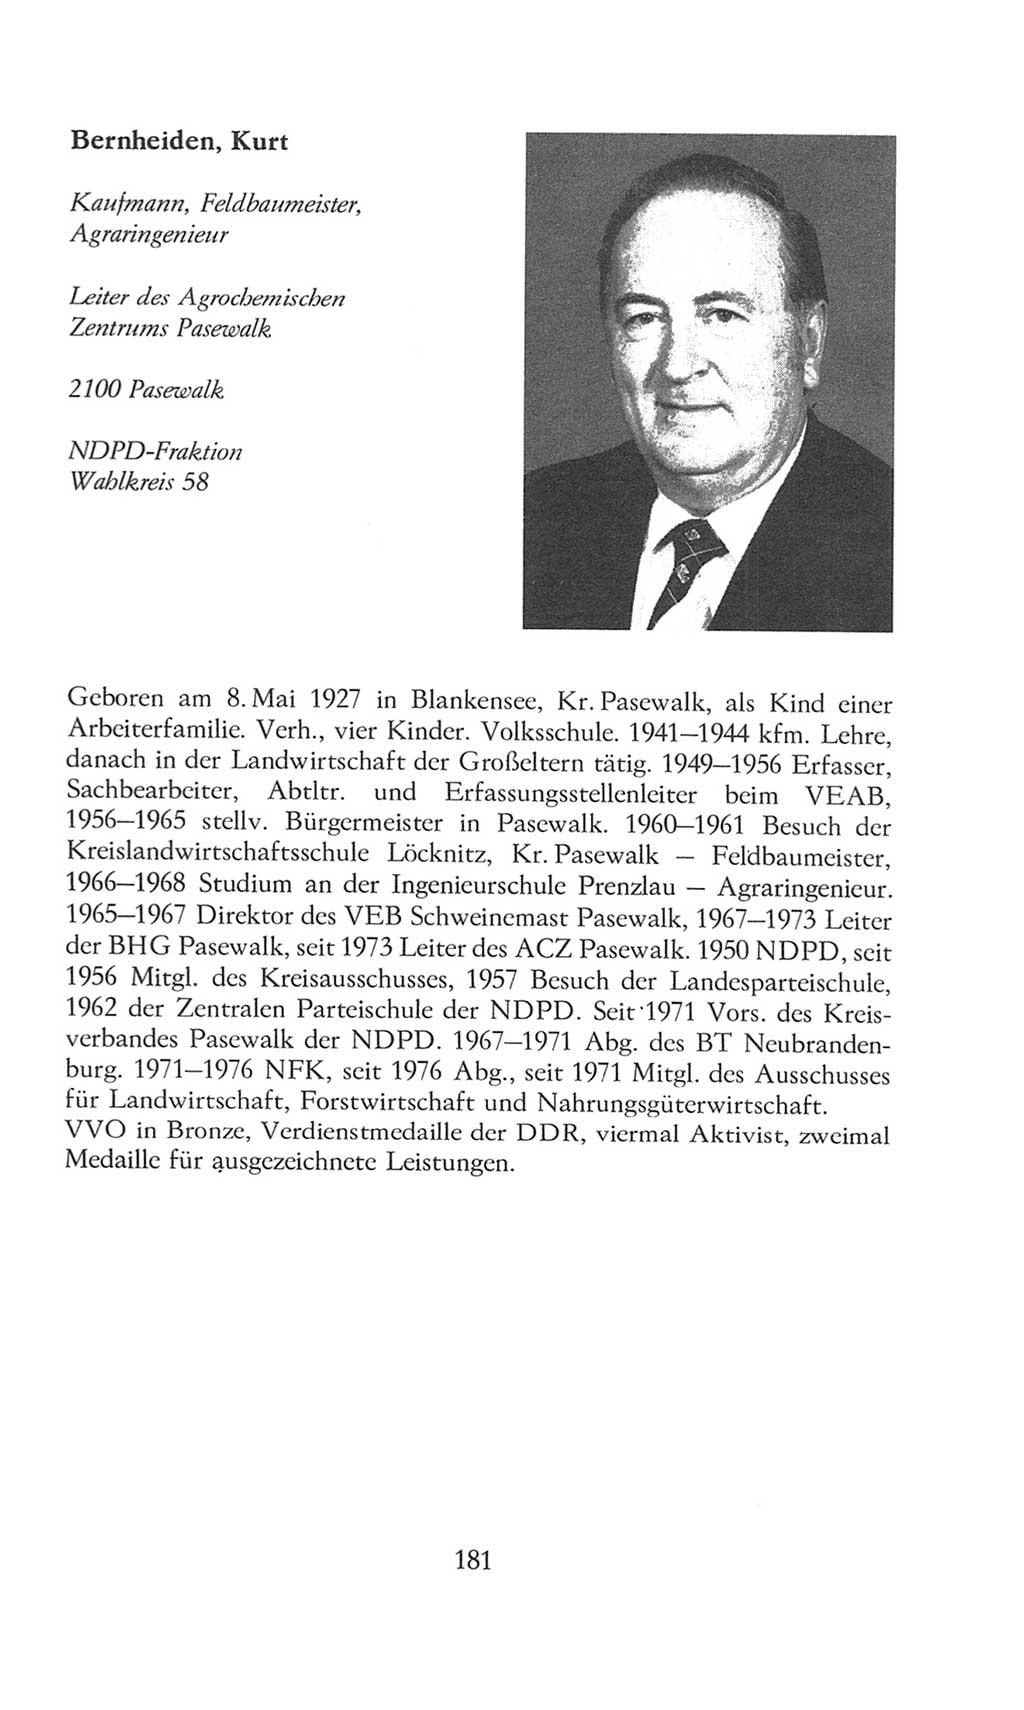 Volkskammer (VK) der Deutschen Demokratischen Republik (DDR), 8. Wahlperiode 1981-1986, Seite 181 (VK. DDR 8. WP. 1981-1986, S. 181)